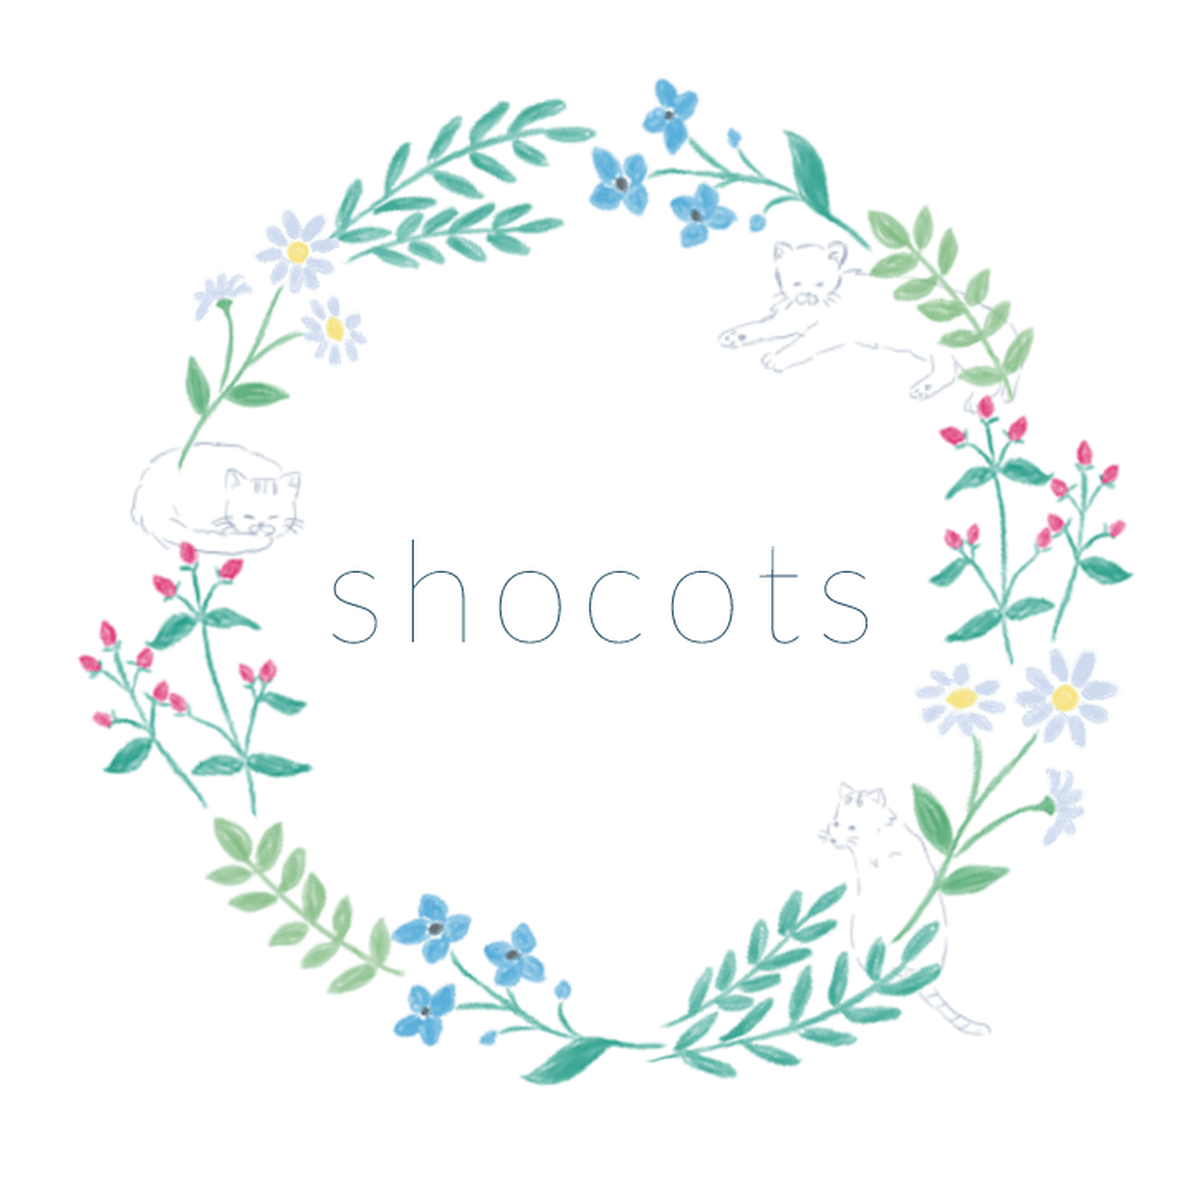 Shocots